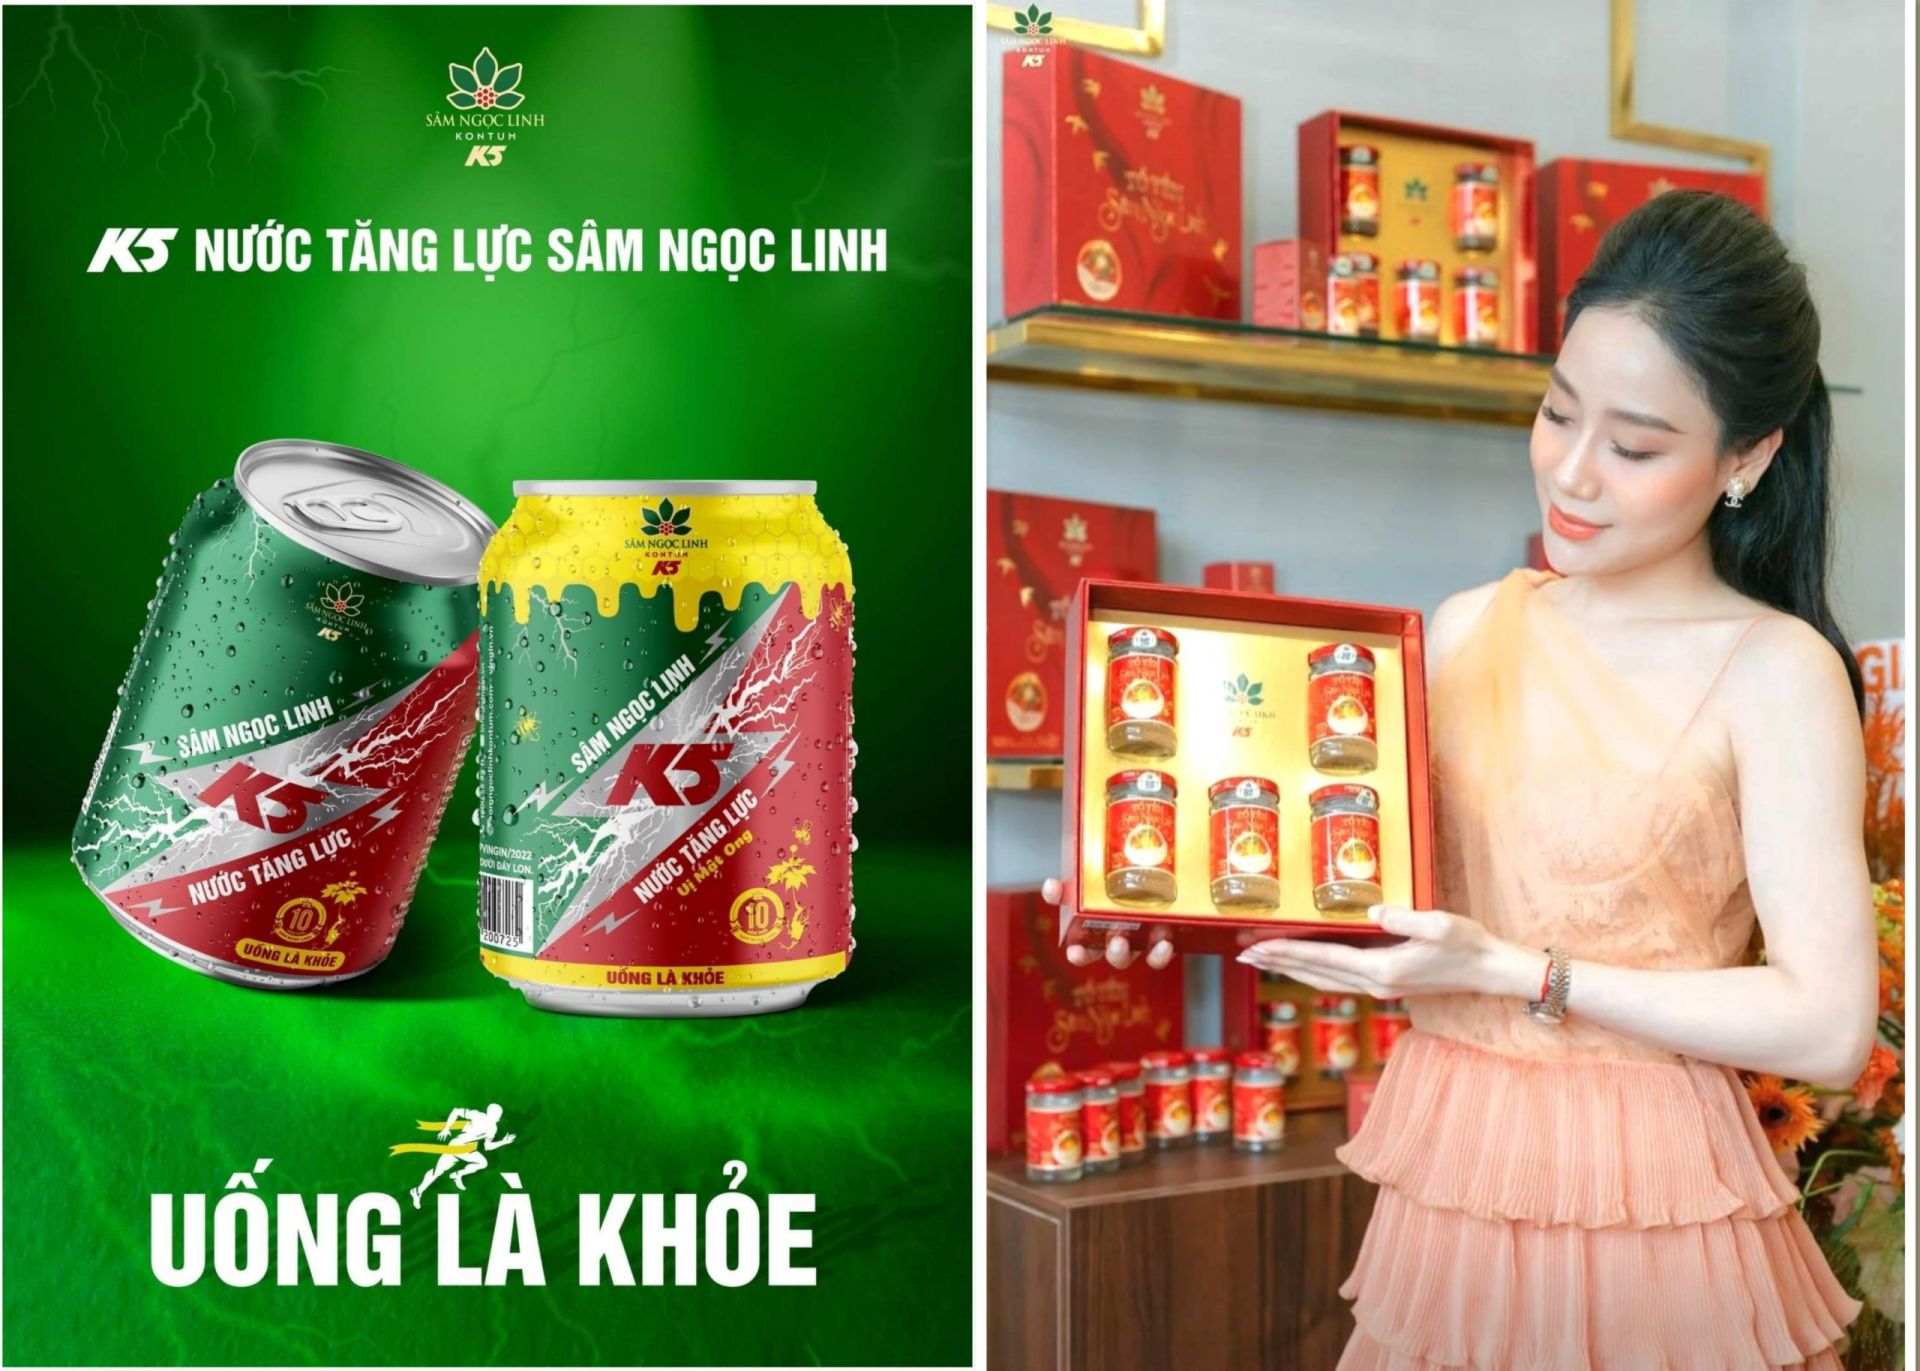 Trong nhiều năm qua, thuơng hiệu Sâm Ngọc Linh Kon Tum K5 liên tục phát triển các dòng sản phẩm chất lượng, có lợi cho sức khoẻ được chế biến từ những thảo dược quý của Việt Nam, đặc biệt là các sản phẩm từ sâm Ngọc Linh